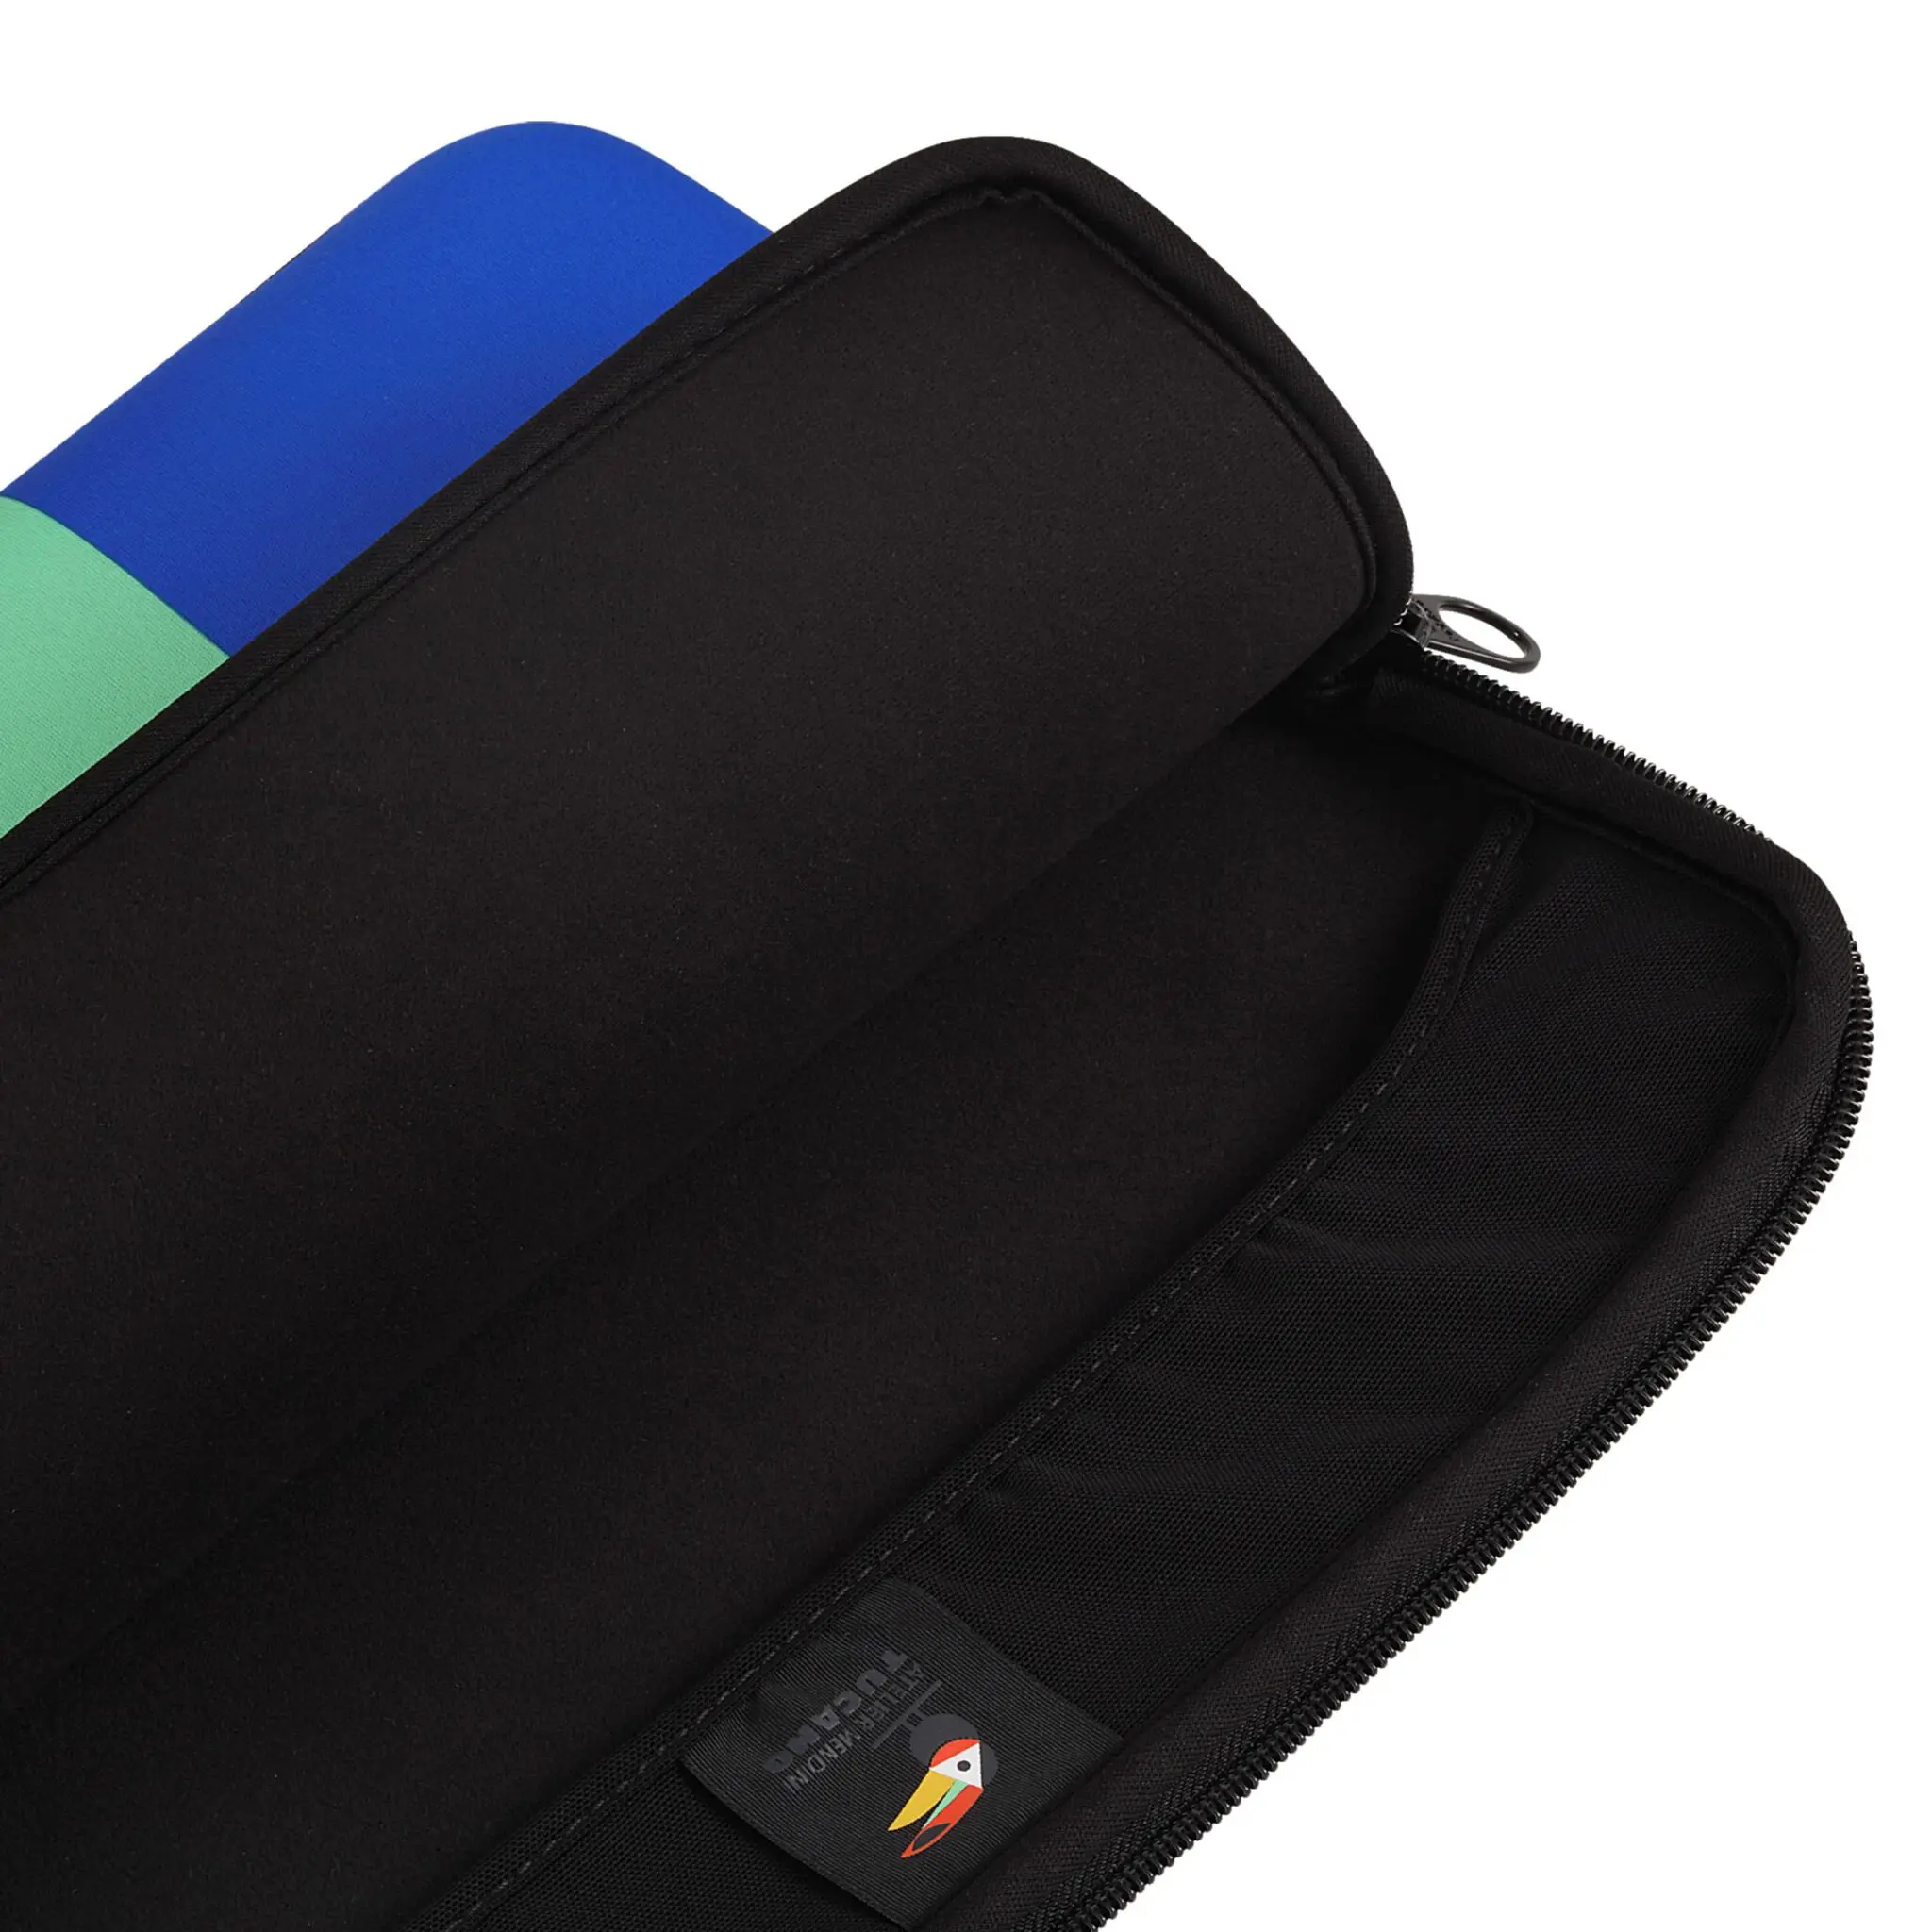 ซองโน๊ตบุ๊ค Tucano รุ่น Shake Neoprene Sleeve - MacBook Pro 15" / Notebook 14" - Multicolor